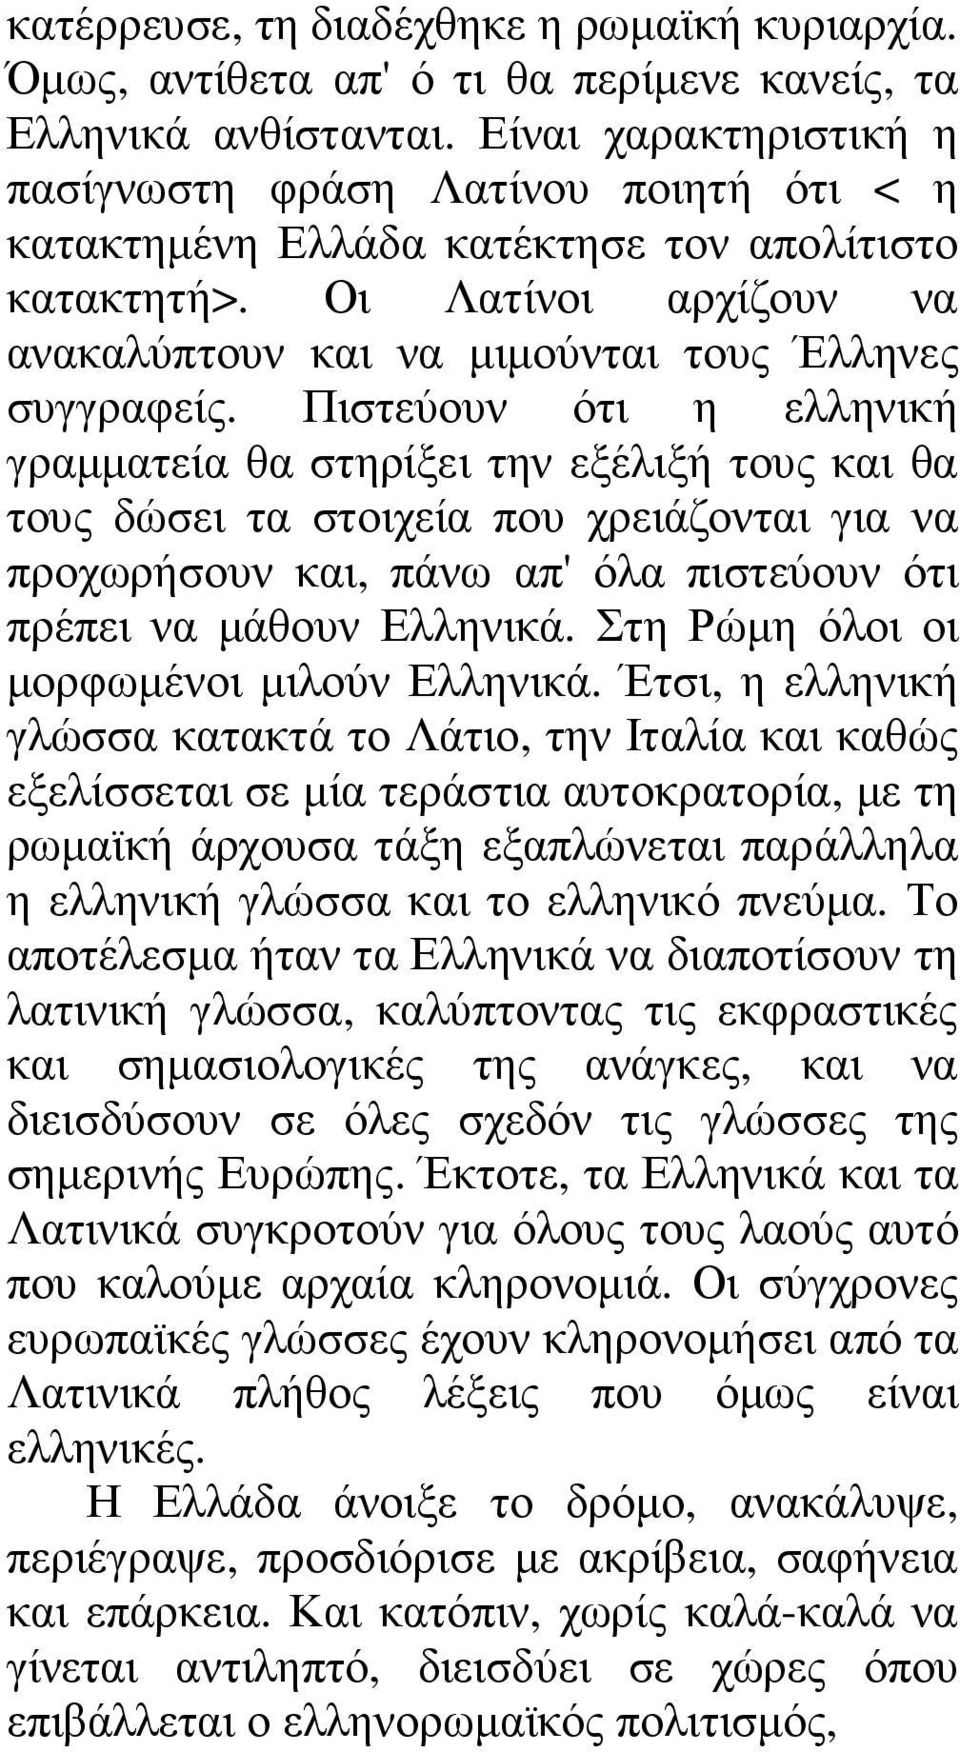 Πιστεύουν ότι η ελληνική γραµµατεία θα στηρίξει την εξέλιξή τους και θα τους δώσει τα στοιχεία που χρειάζονται για να προχωρήσουν και, πάνω απ' όλα πιστεύουν ότι πρέπει να µάθουν Ελληνικά.